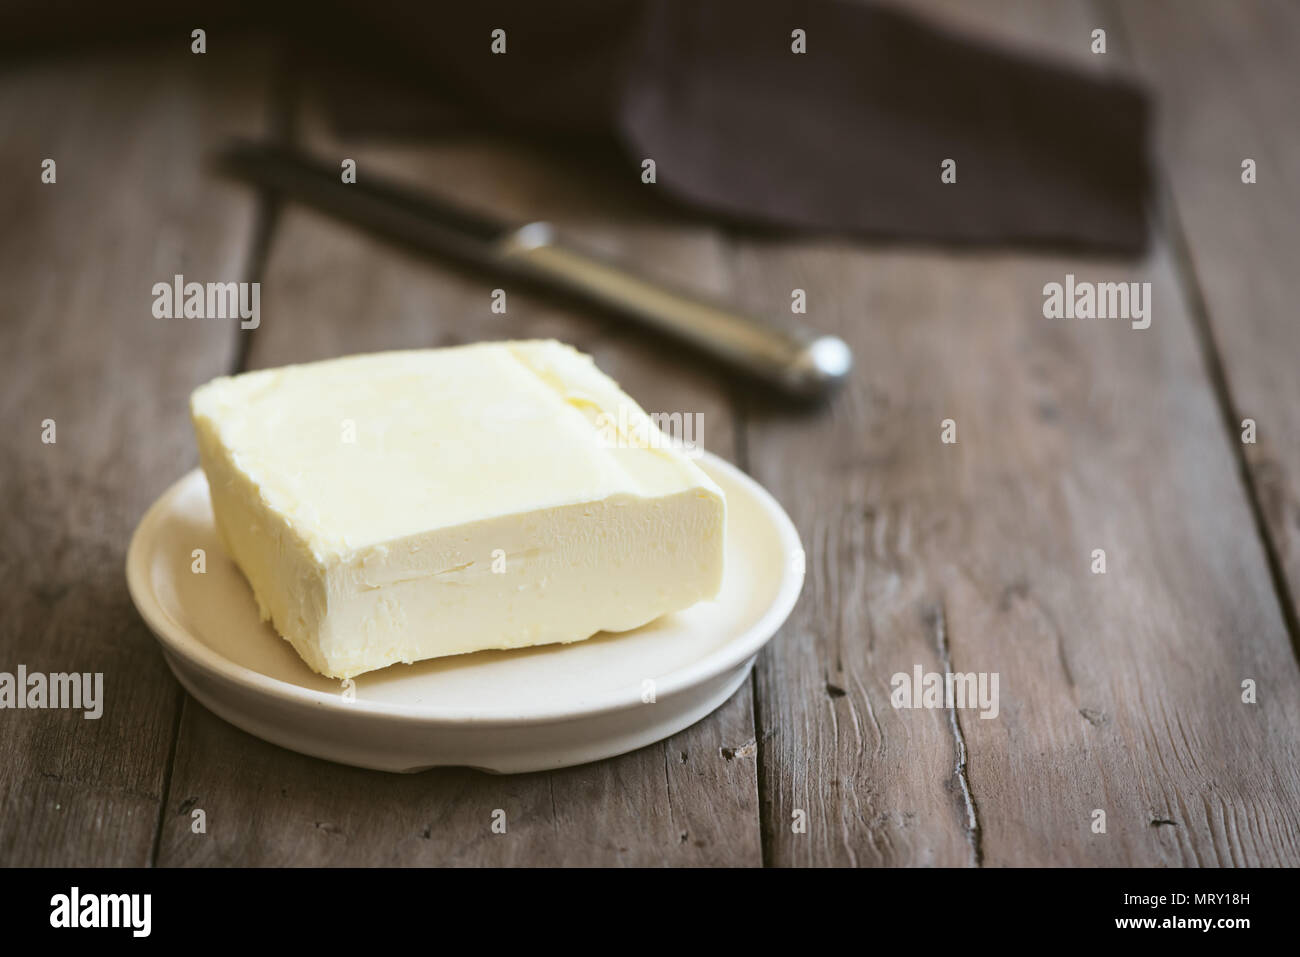 Mantequilla sobre fondo de madera oscura, copie el espacio. Granja de productos lácteos - mantequilla. Foto de stock